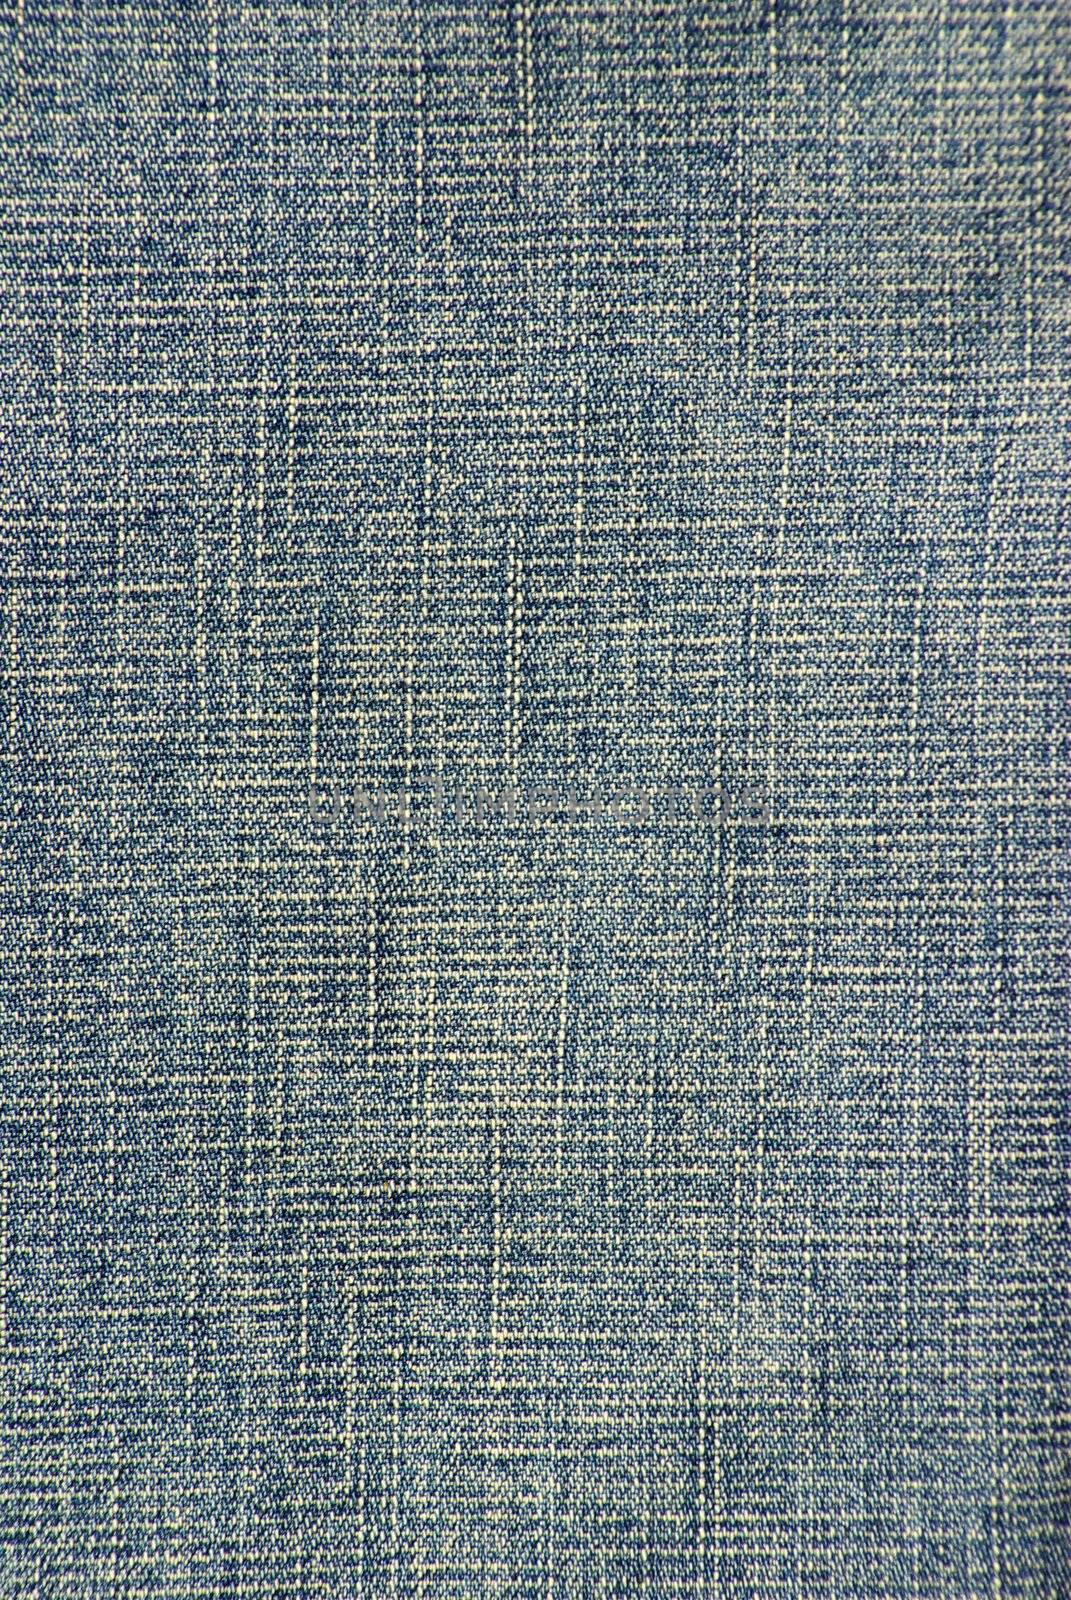 jeans texture by Pakhnyushchyy